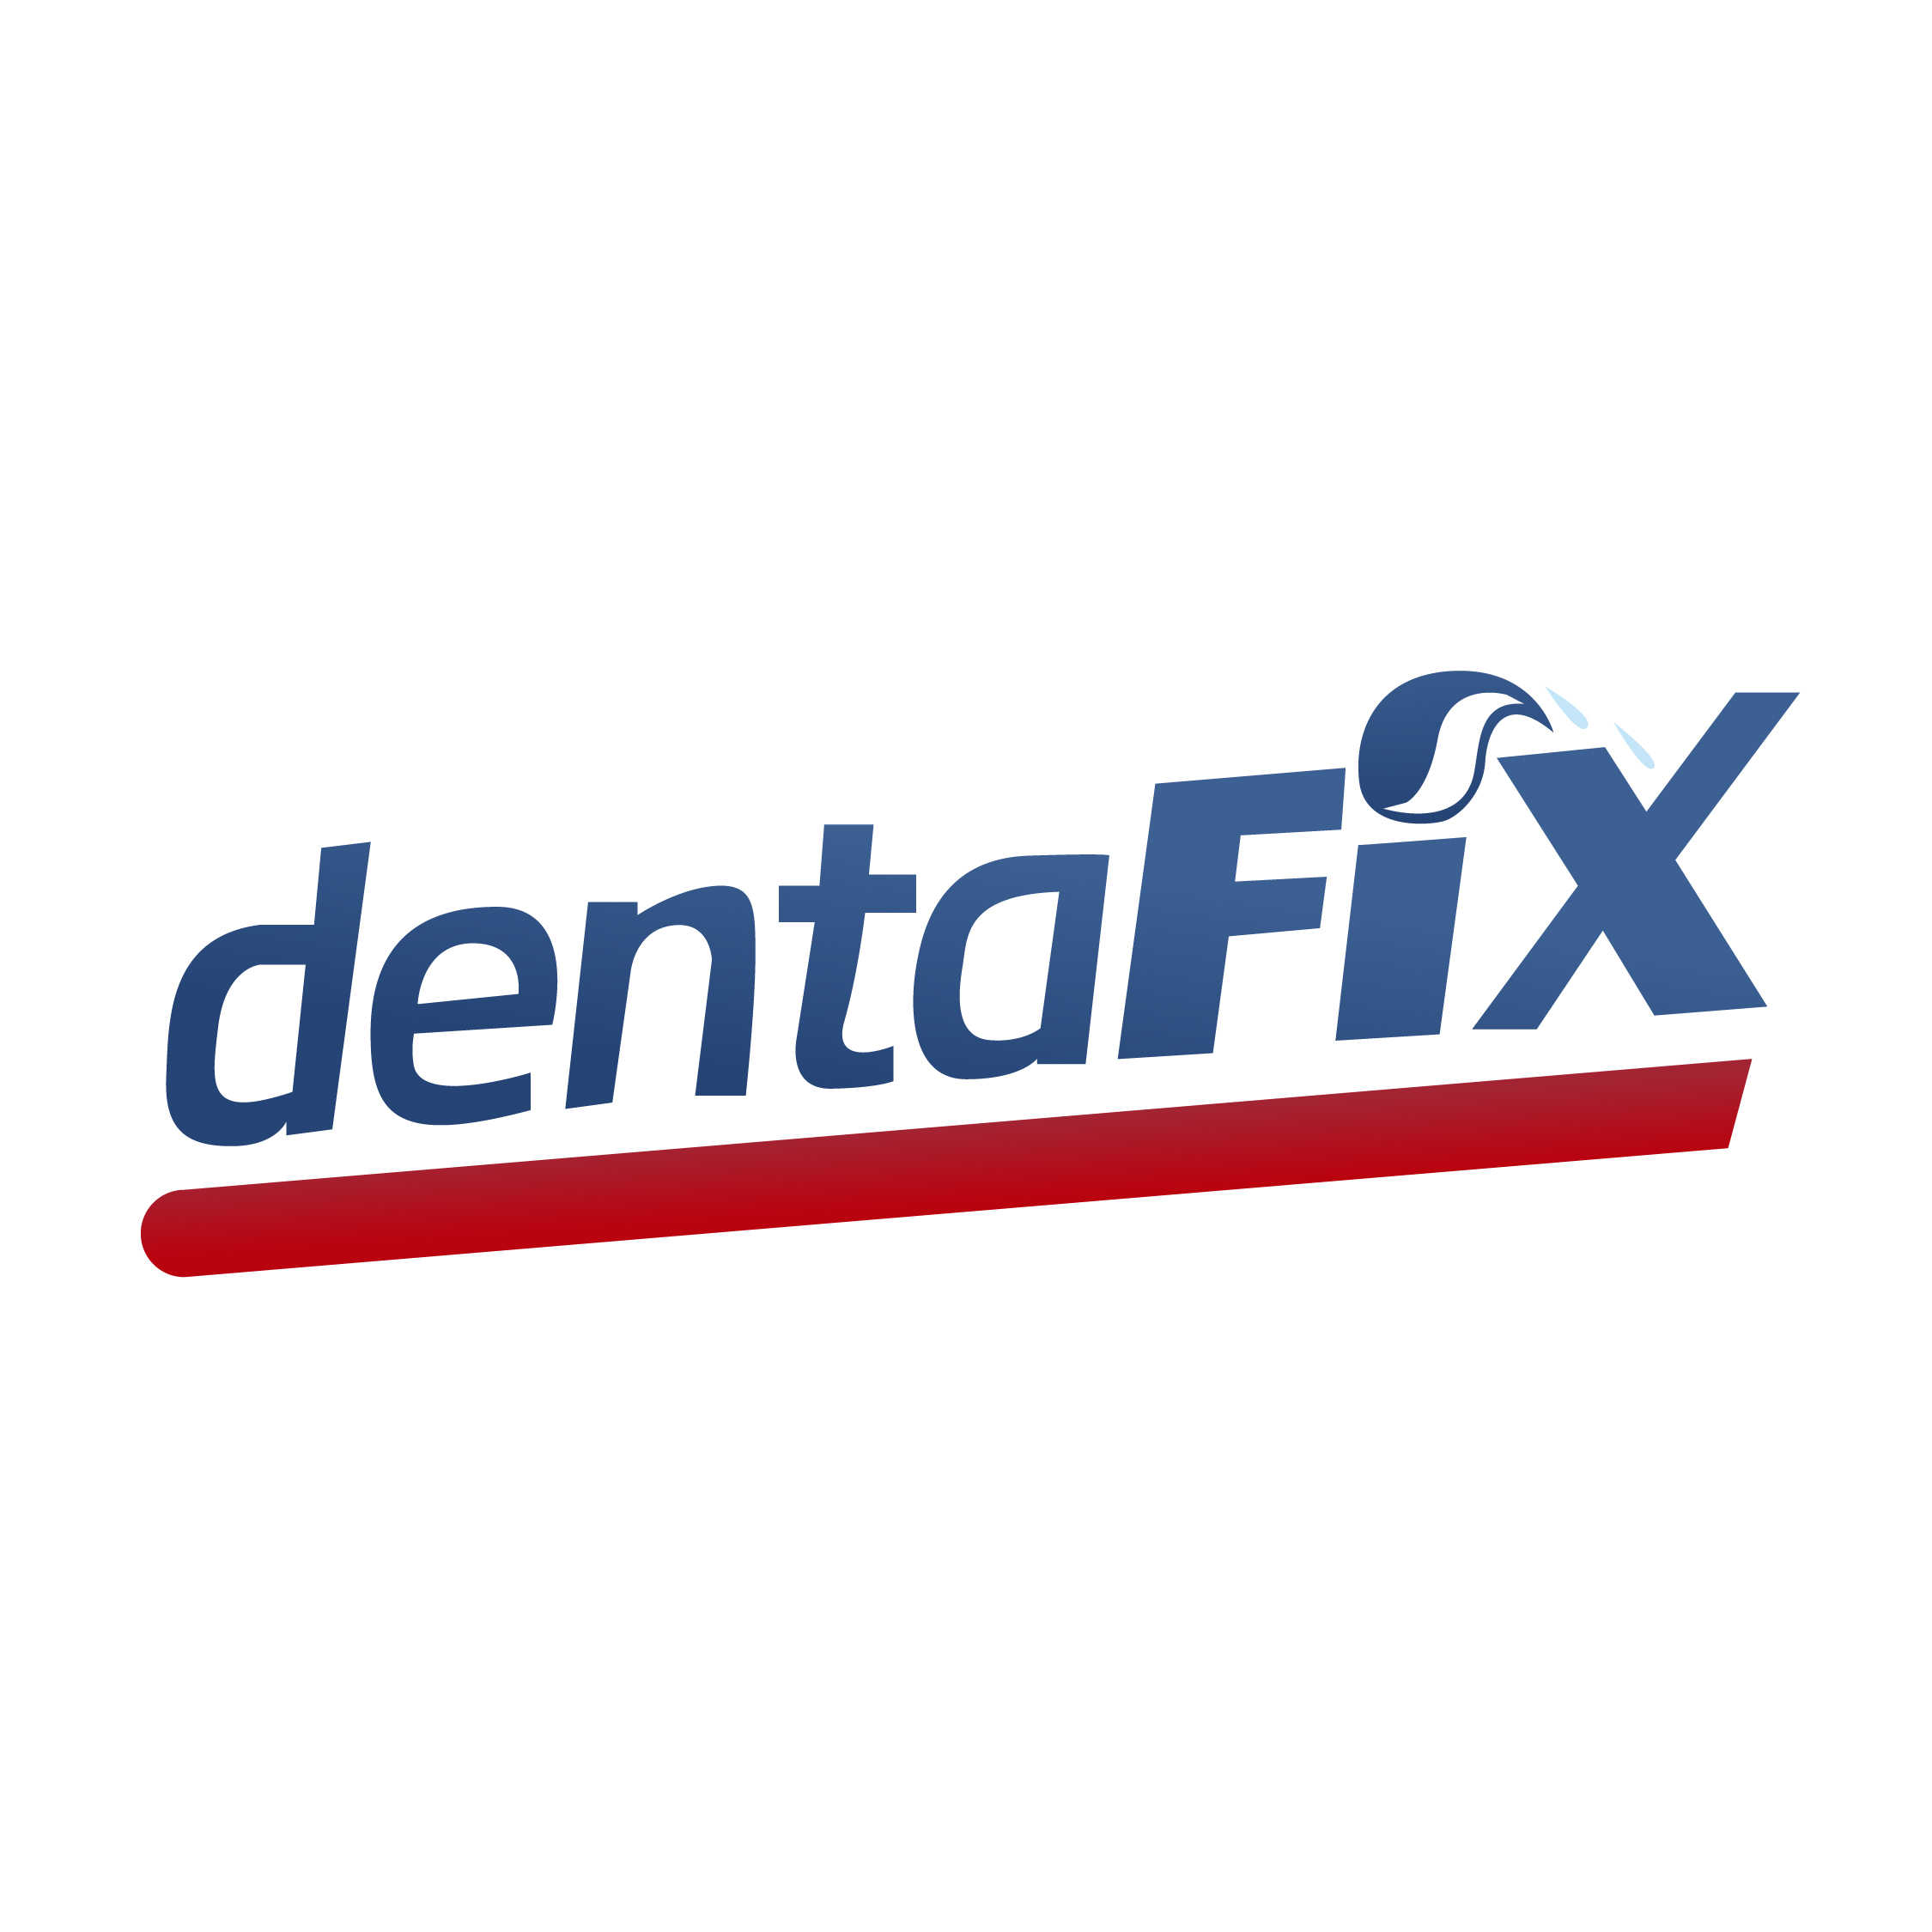 Dentafix Temporary Filling Repair